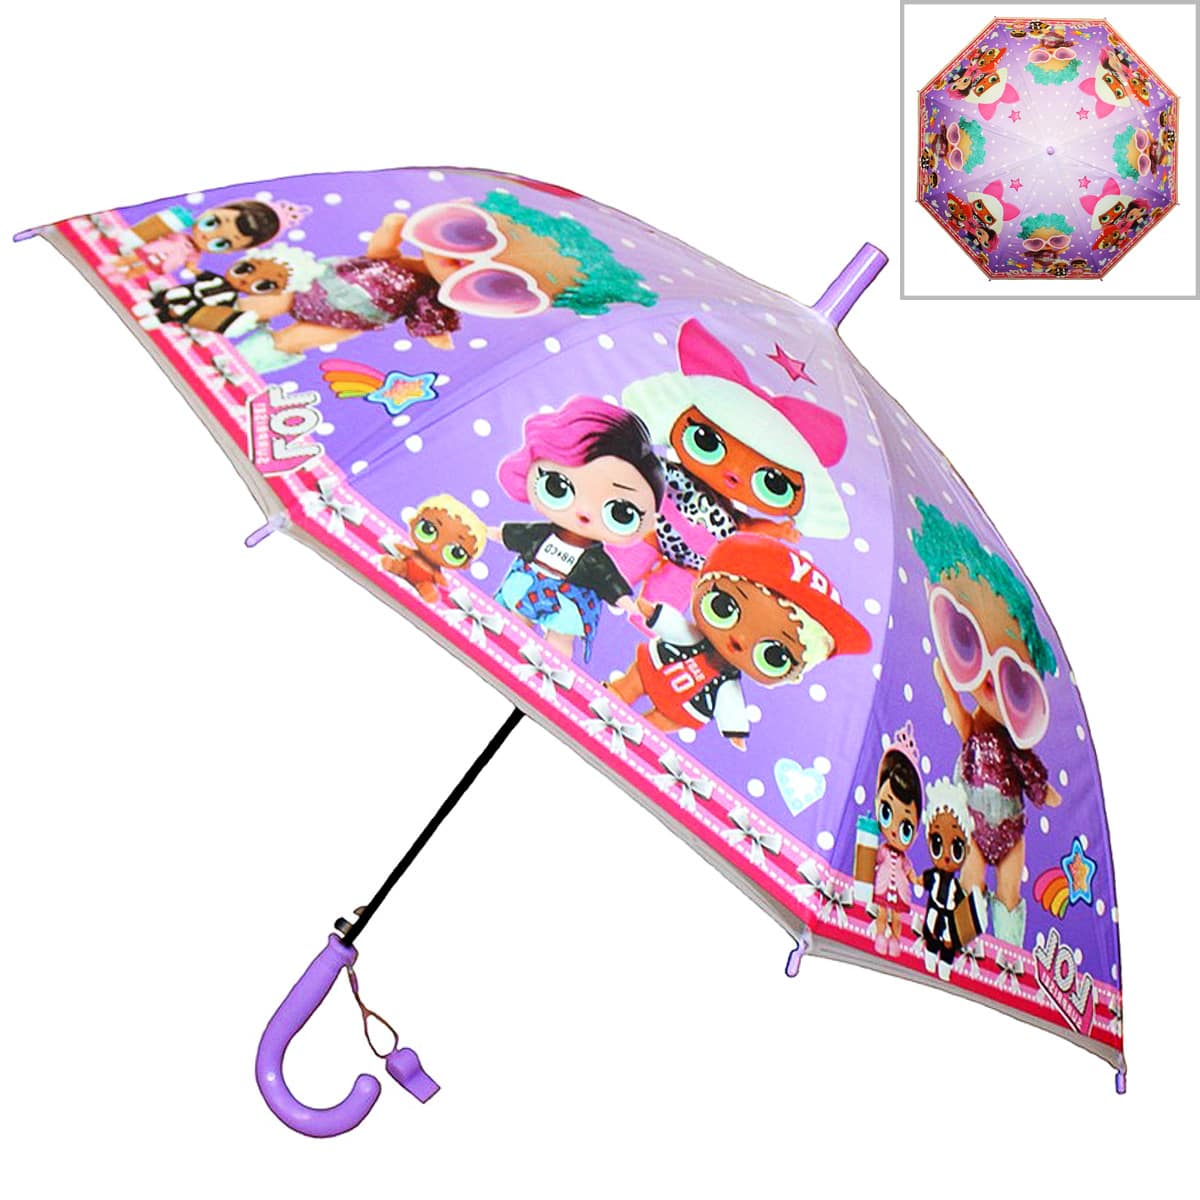 Зонт-трость LOL детский